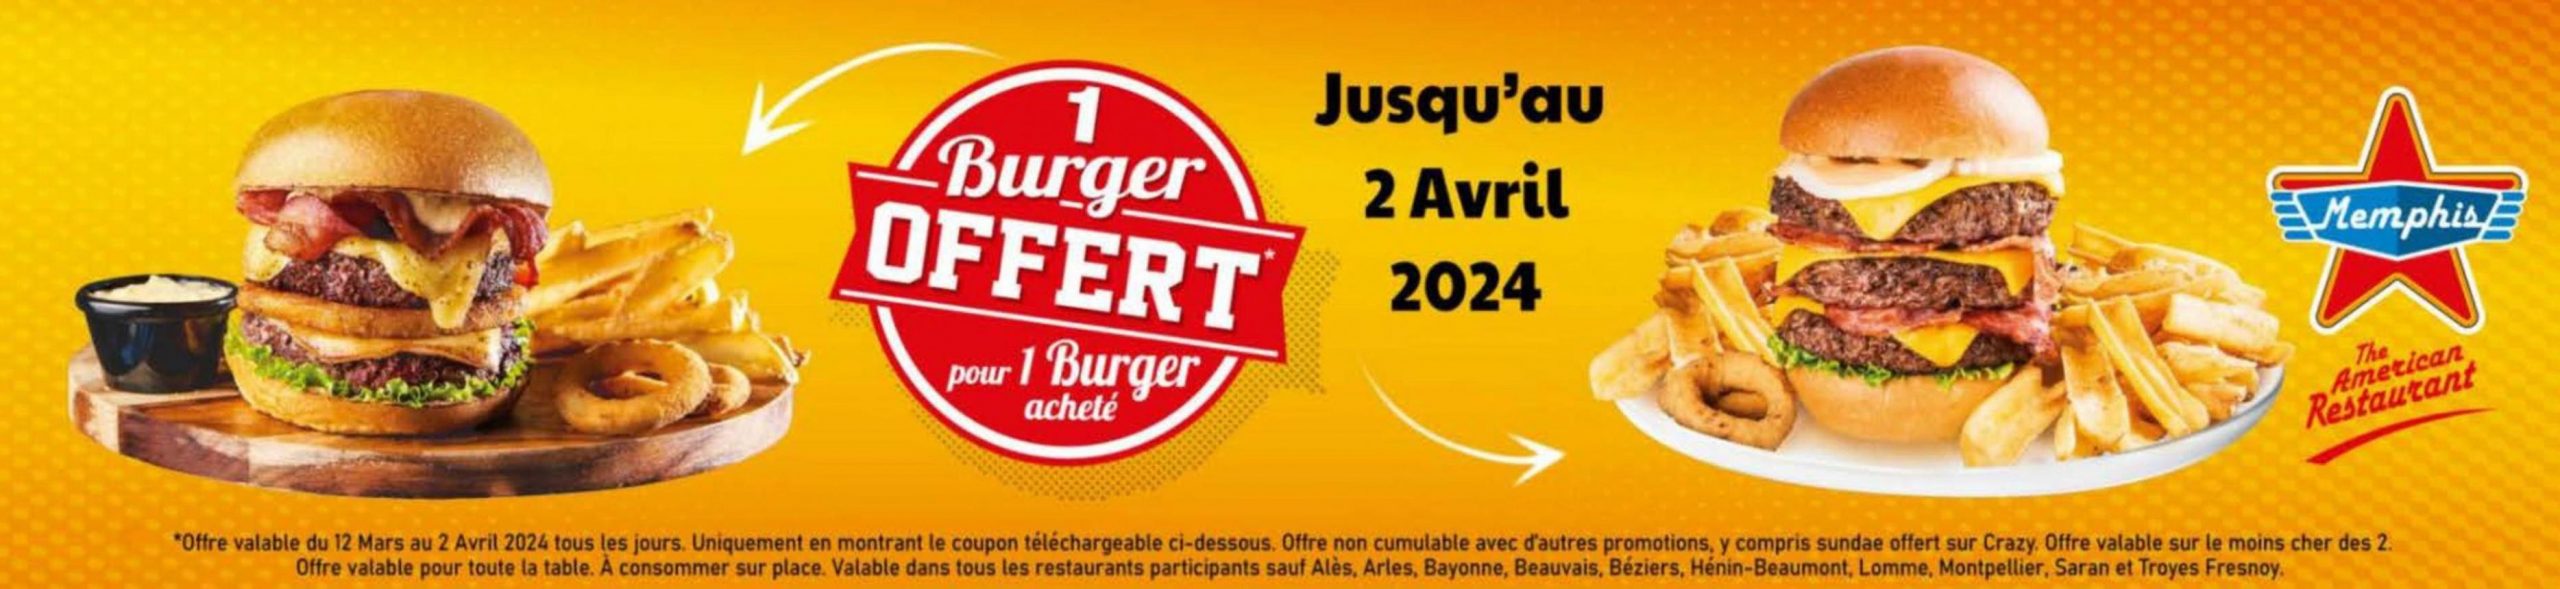 1 Burger Offert Pour 1 Burger Acheté. Memphis Coffee (2024-04-02-2024-04-02)